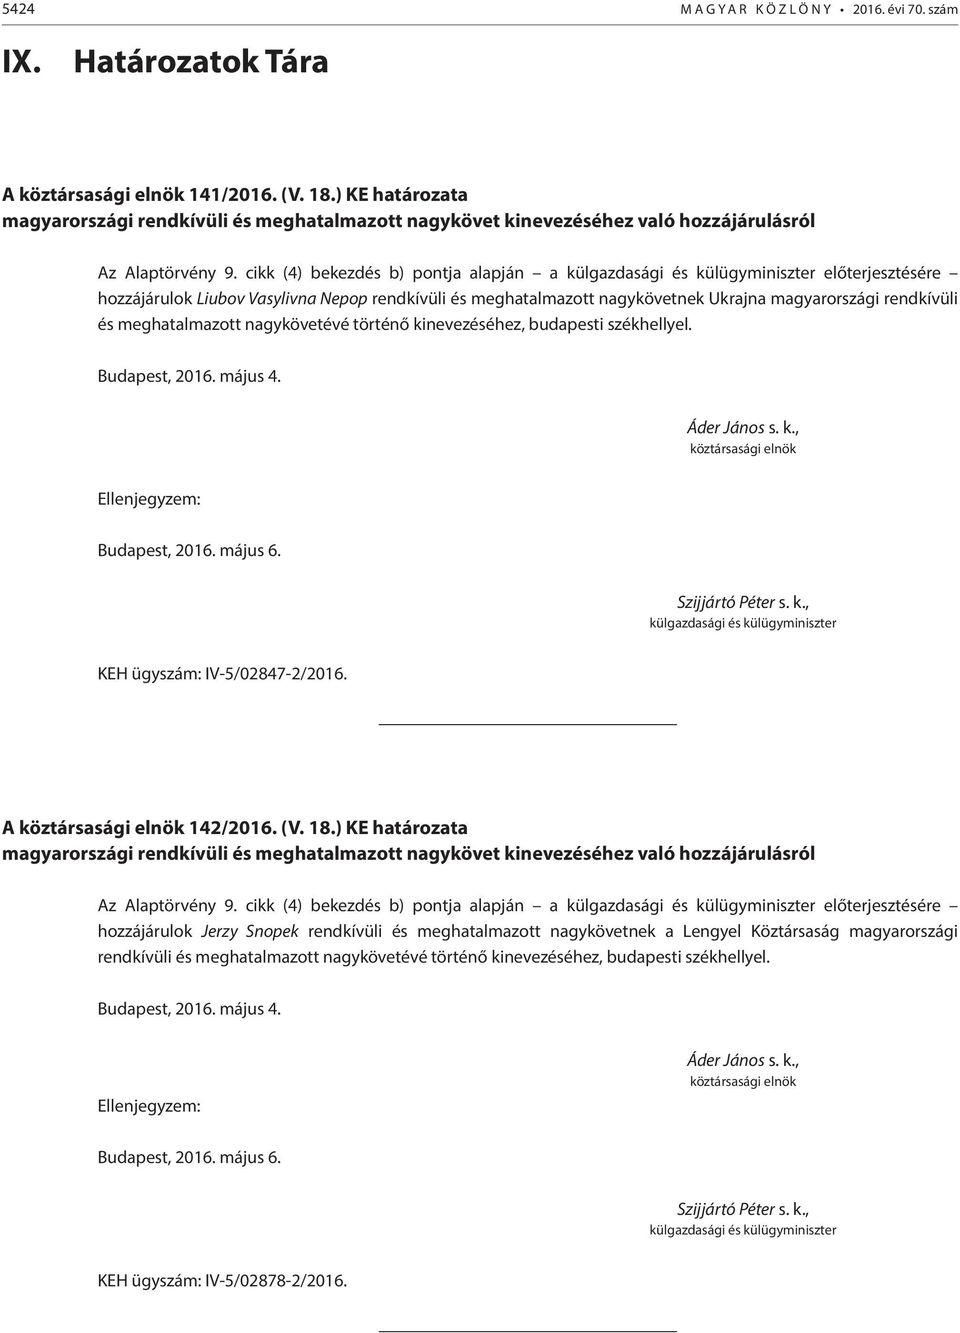 cikk (4) bekezdés b) pontja alapján a külgazdasági és külügyminiszter előterjesztésére hozzájárulok Liubov Vasylivna Nepop rendkívüli és meghatalmazott nagykövetnek Ukrajna magyarországi rendkívüli